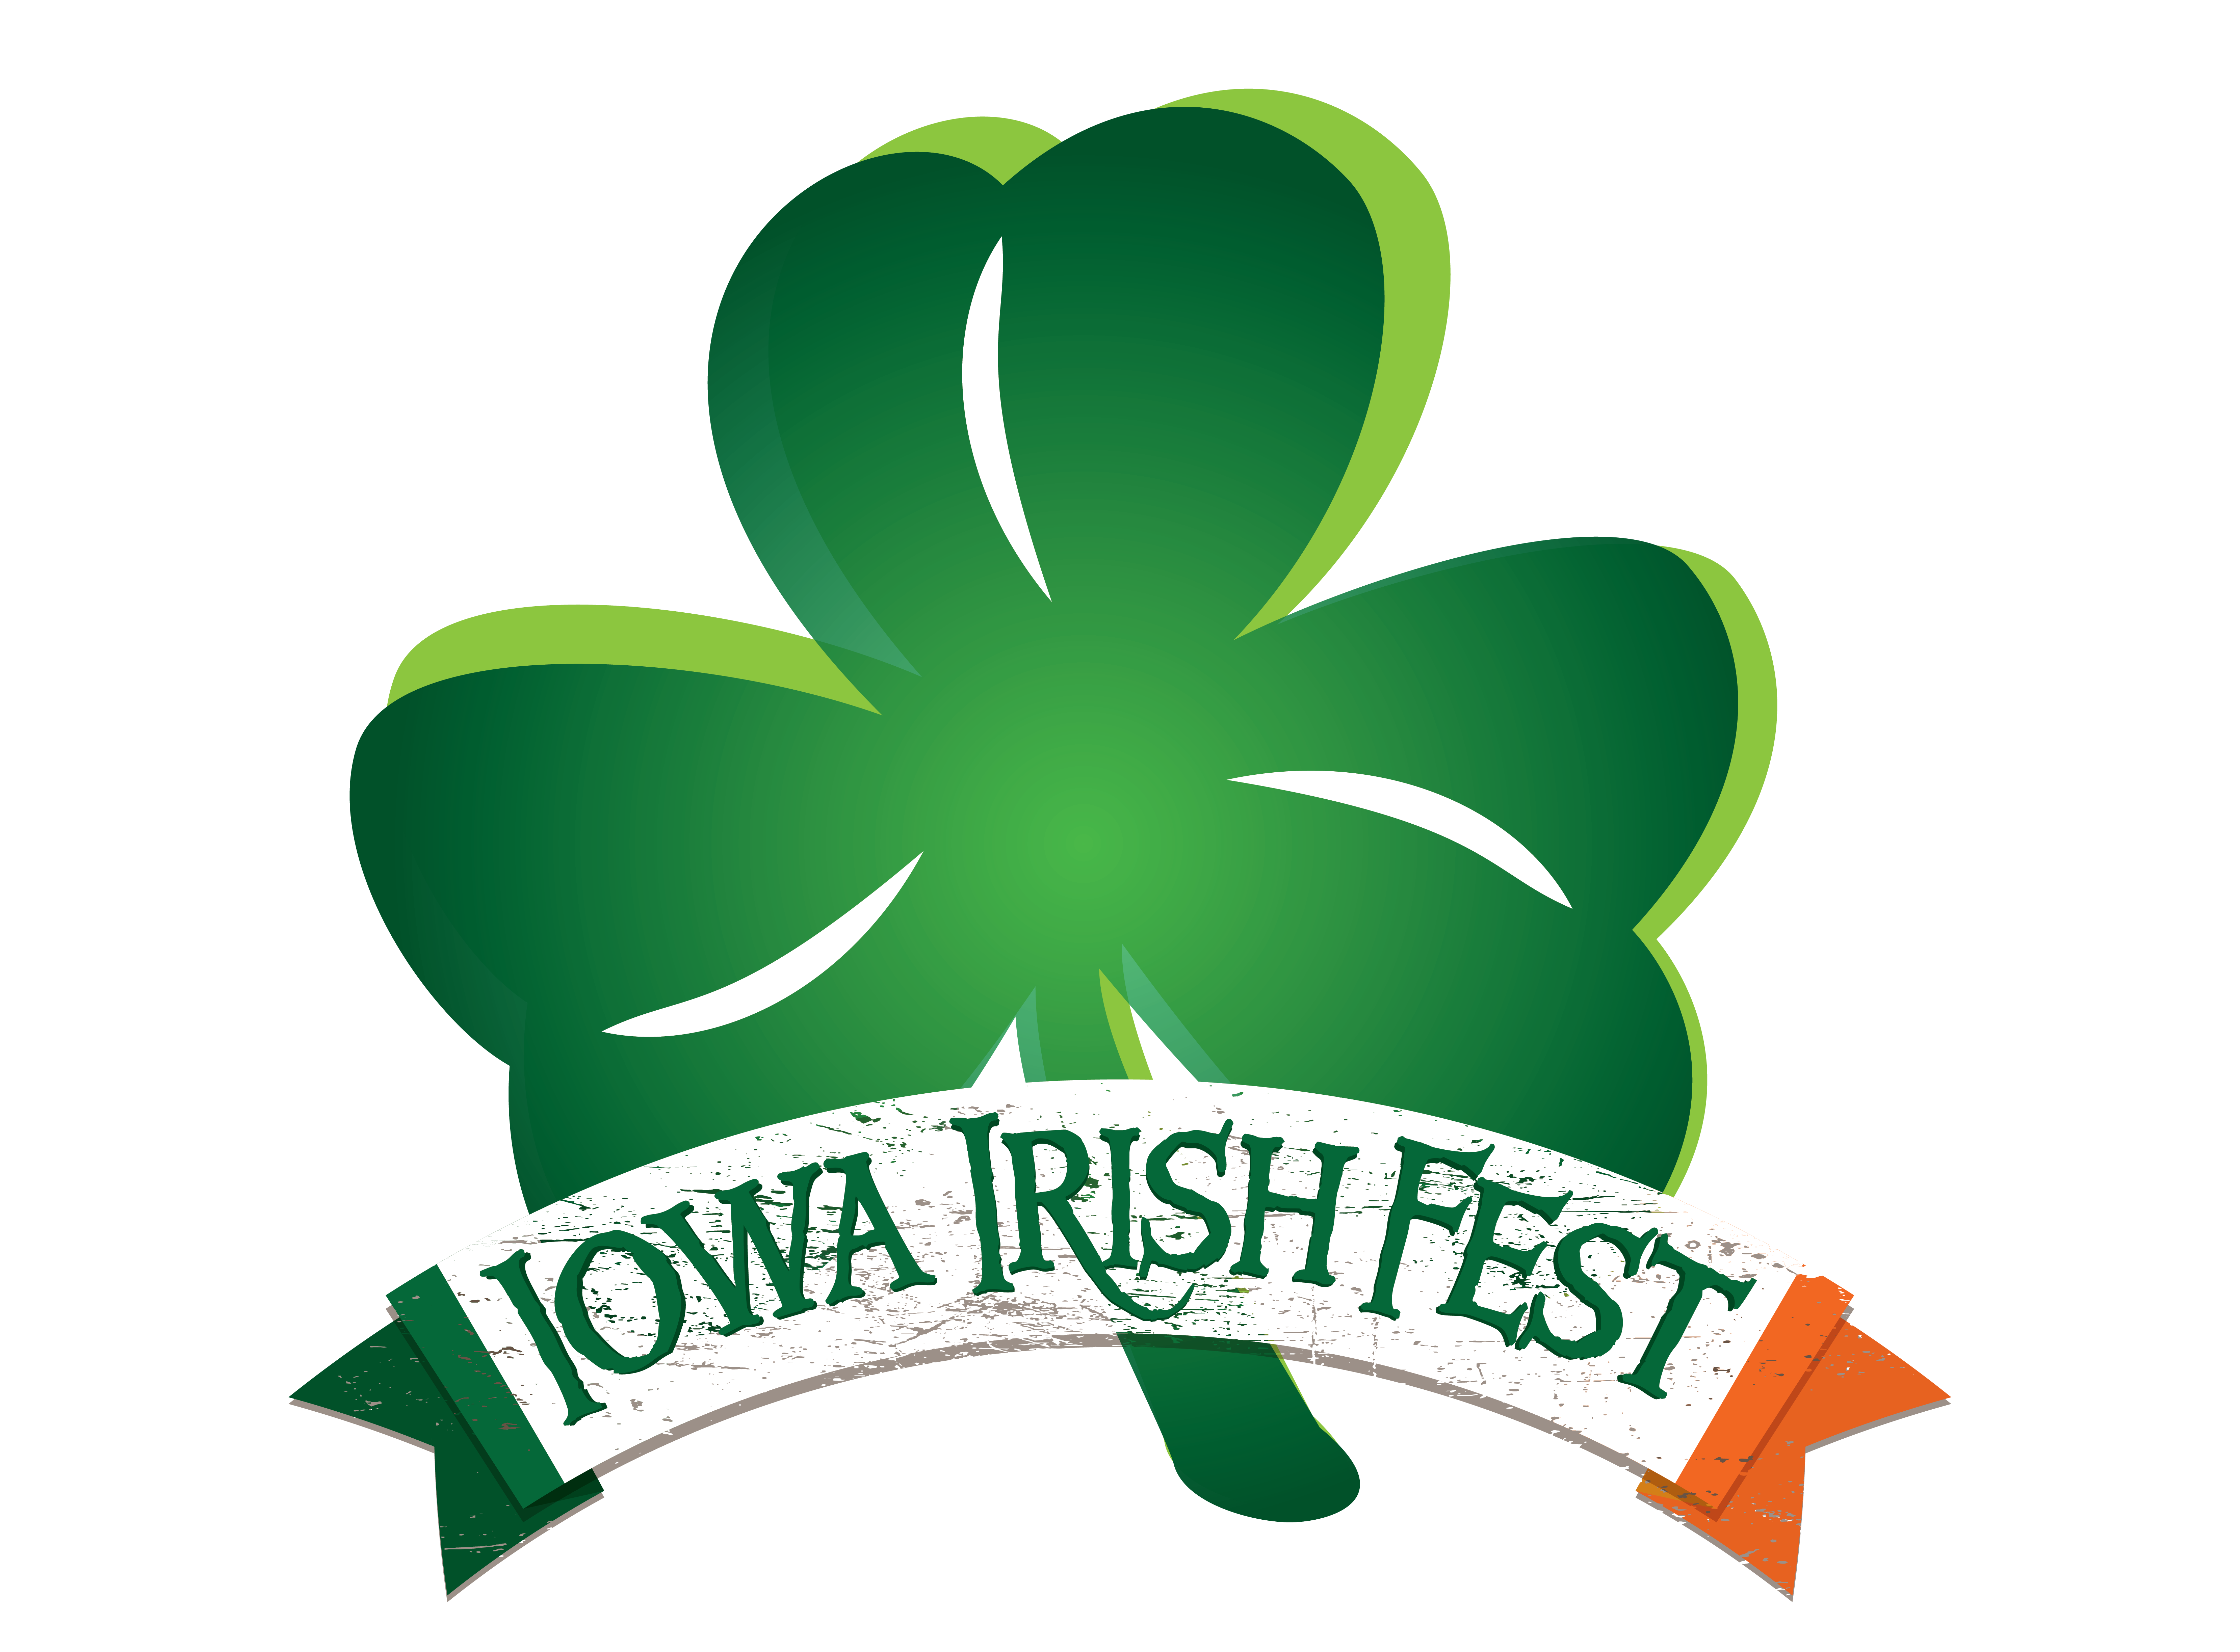 Iowa Irish Fest Brings WorldClass Entertainment to Waterloo Aug. 35